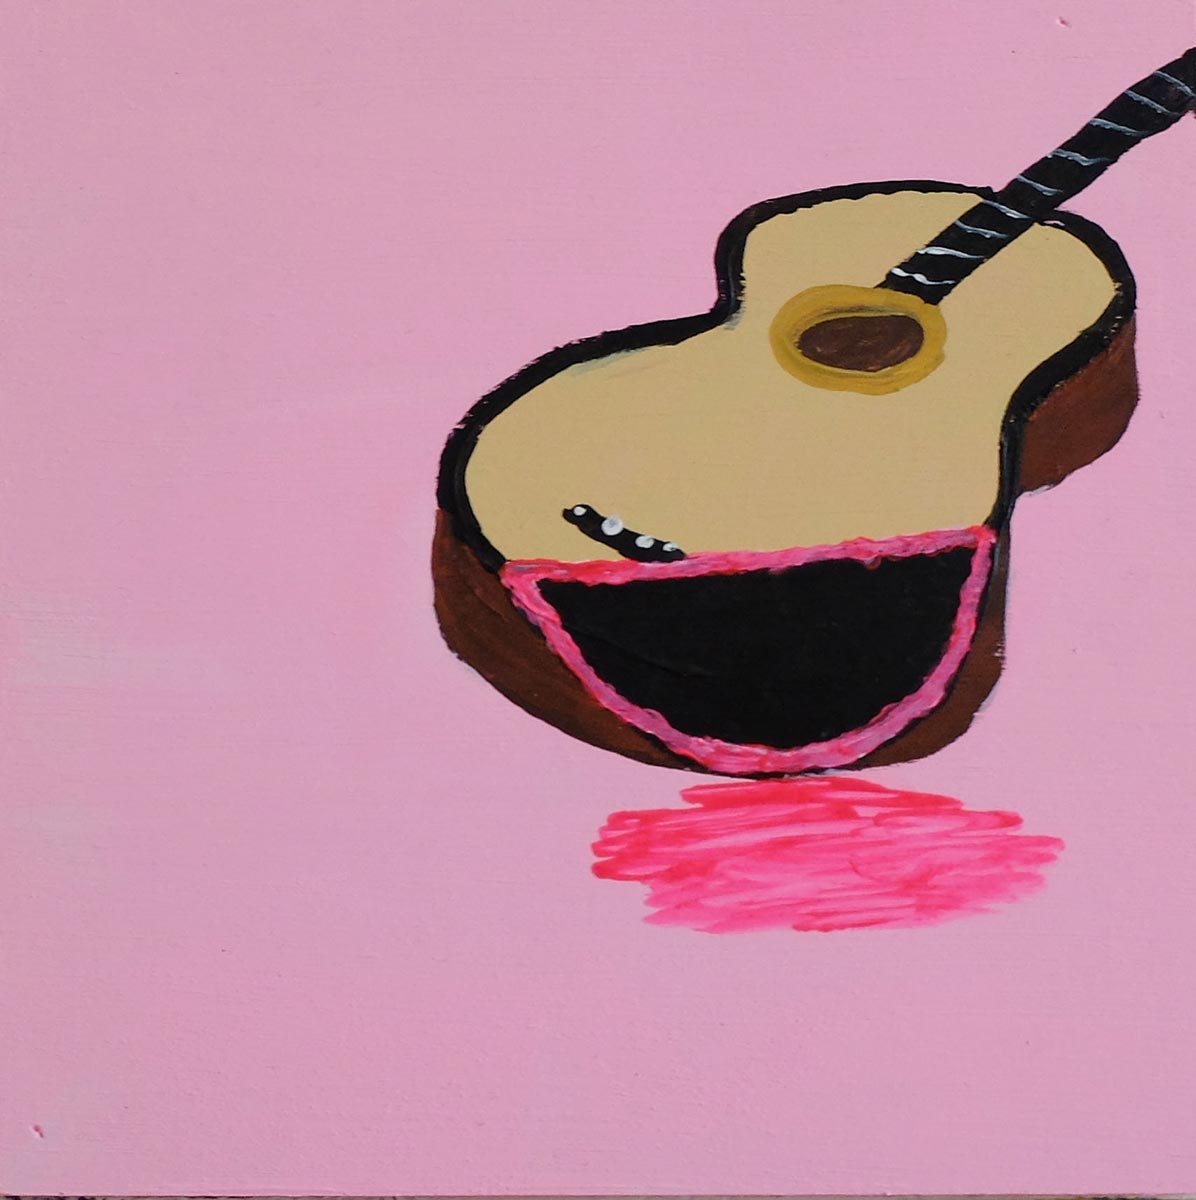 Spanish guitar eating a musician, 20x20 cm, acrylique sur bois, 2015